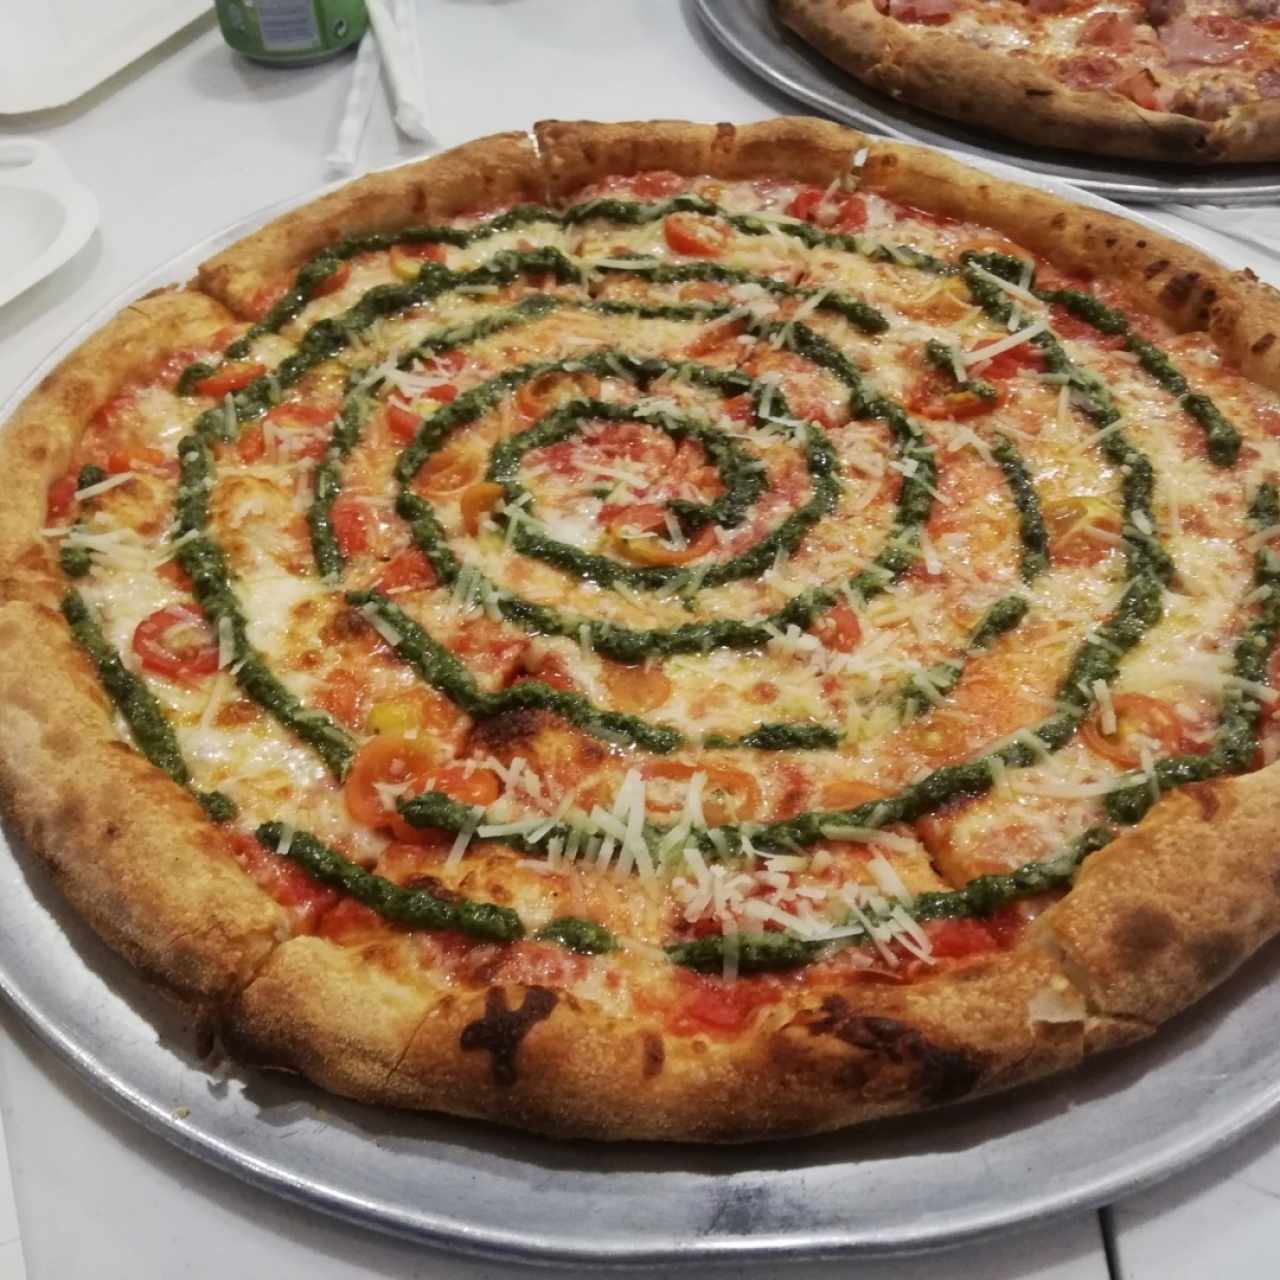 Pizzas Rojas - Pesto